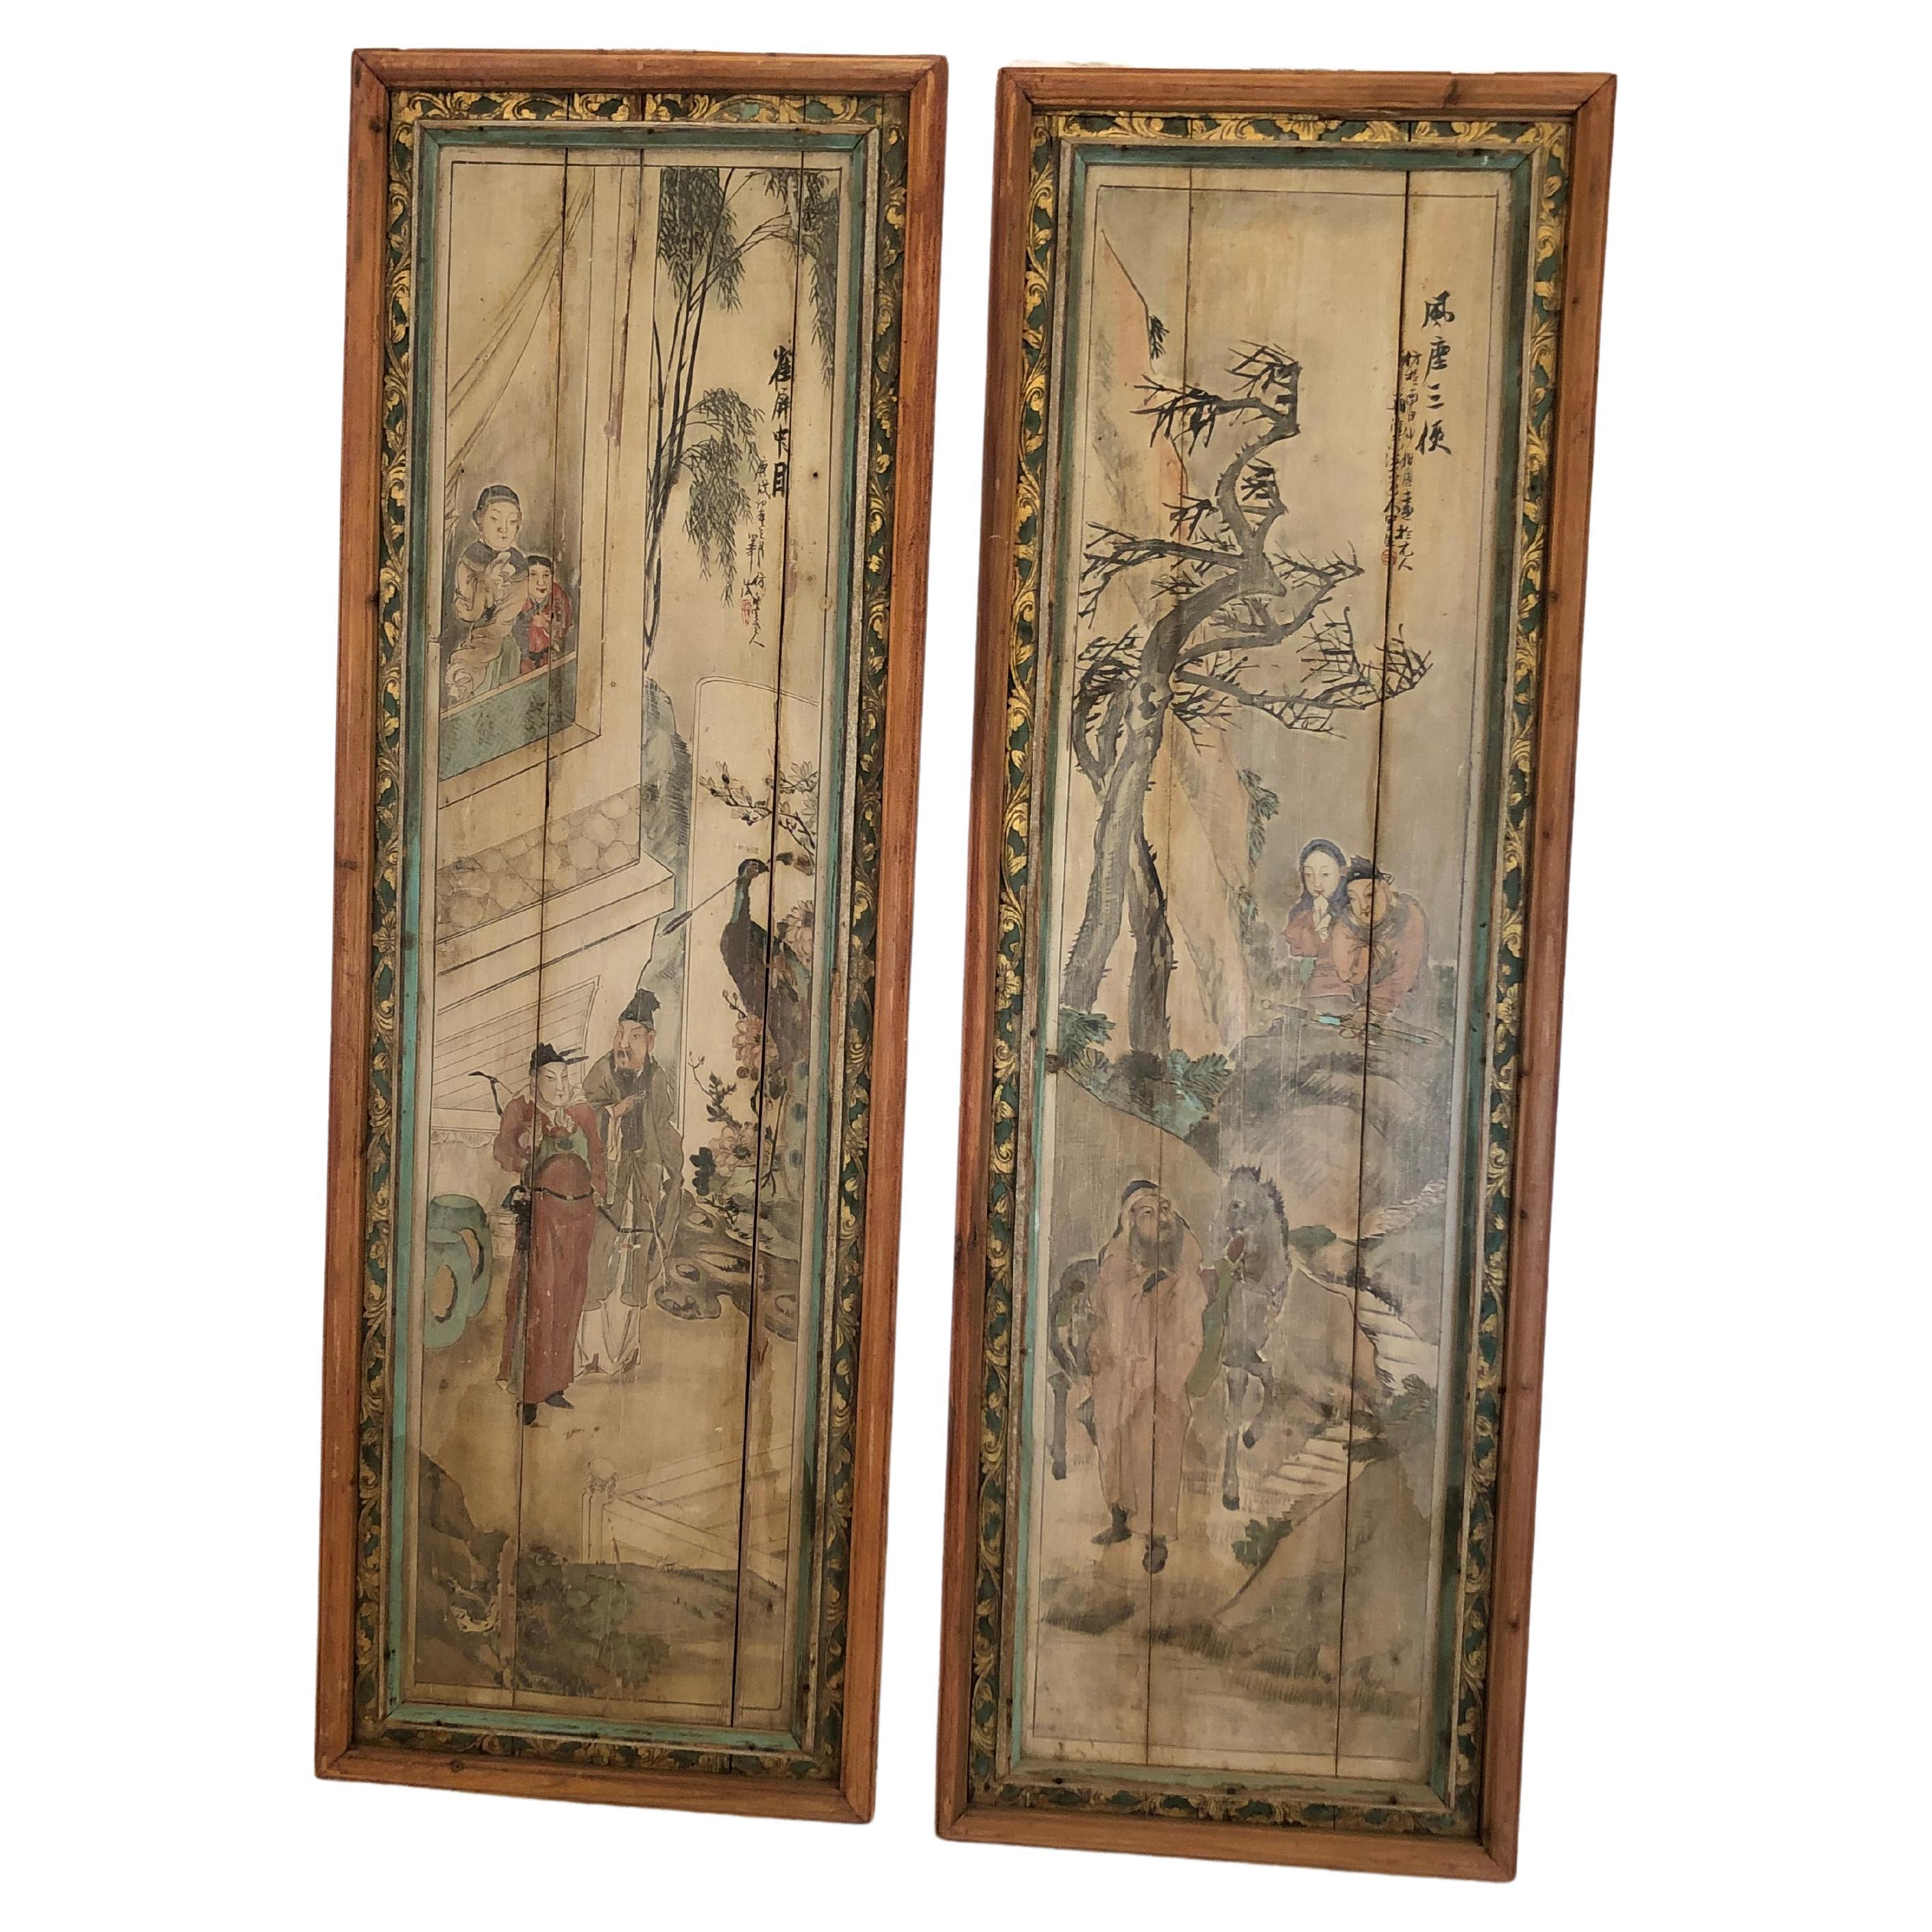 Paire de grands panneaux figuratifs chinois anciens peints en mauvais état datant du 19ème siècle